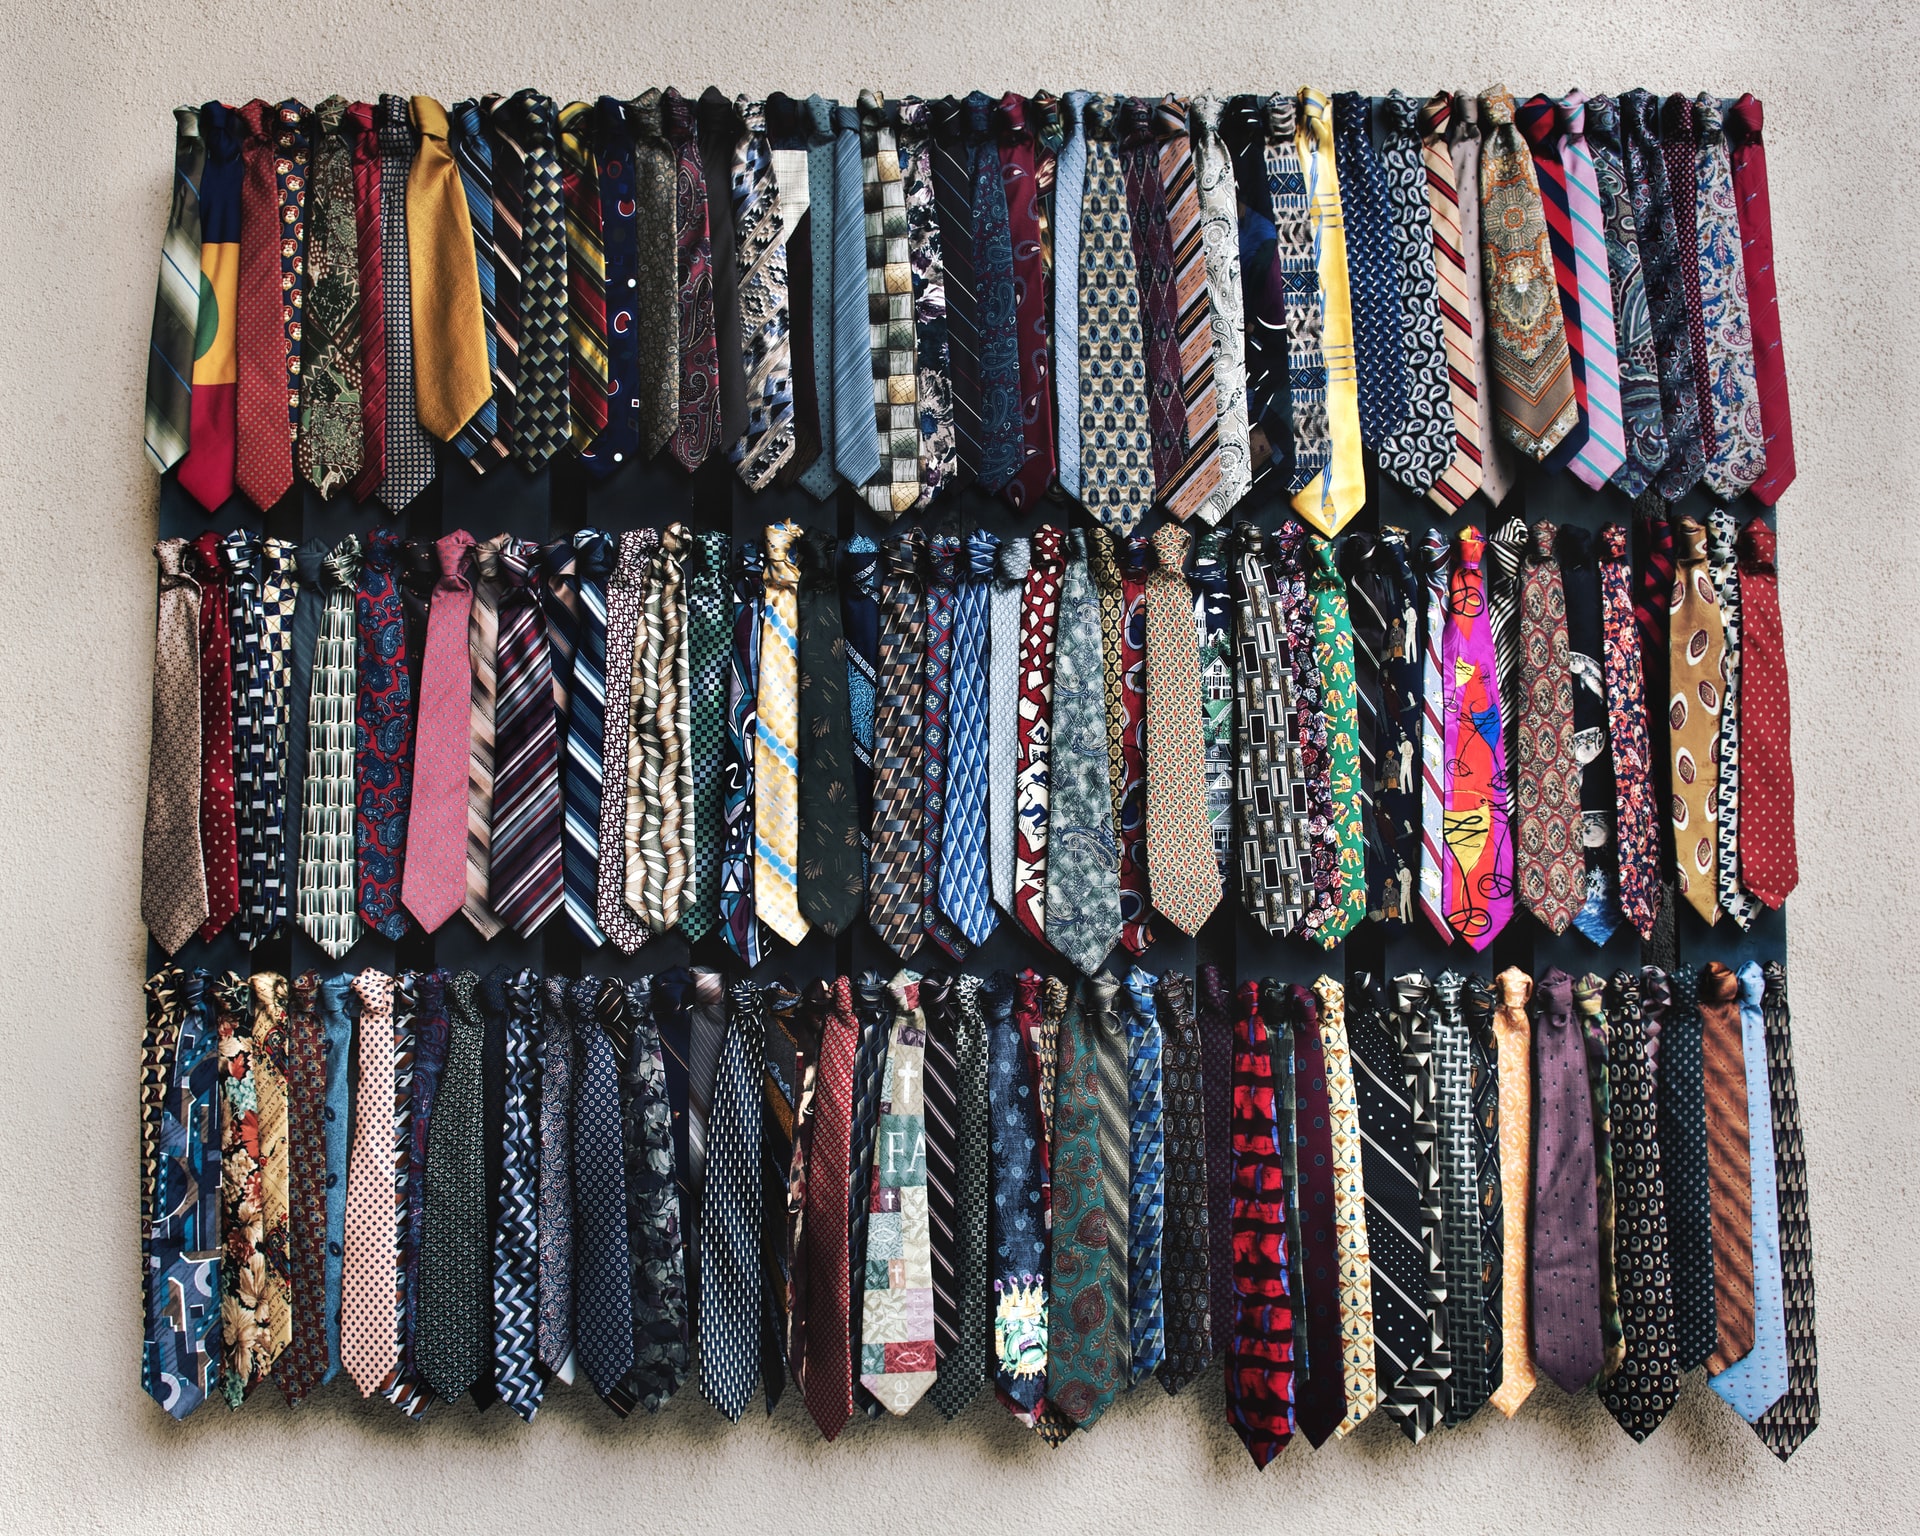 Lämplig slips till begravningen – diskreta mönster och färger